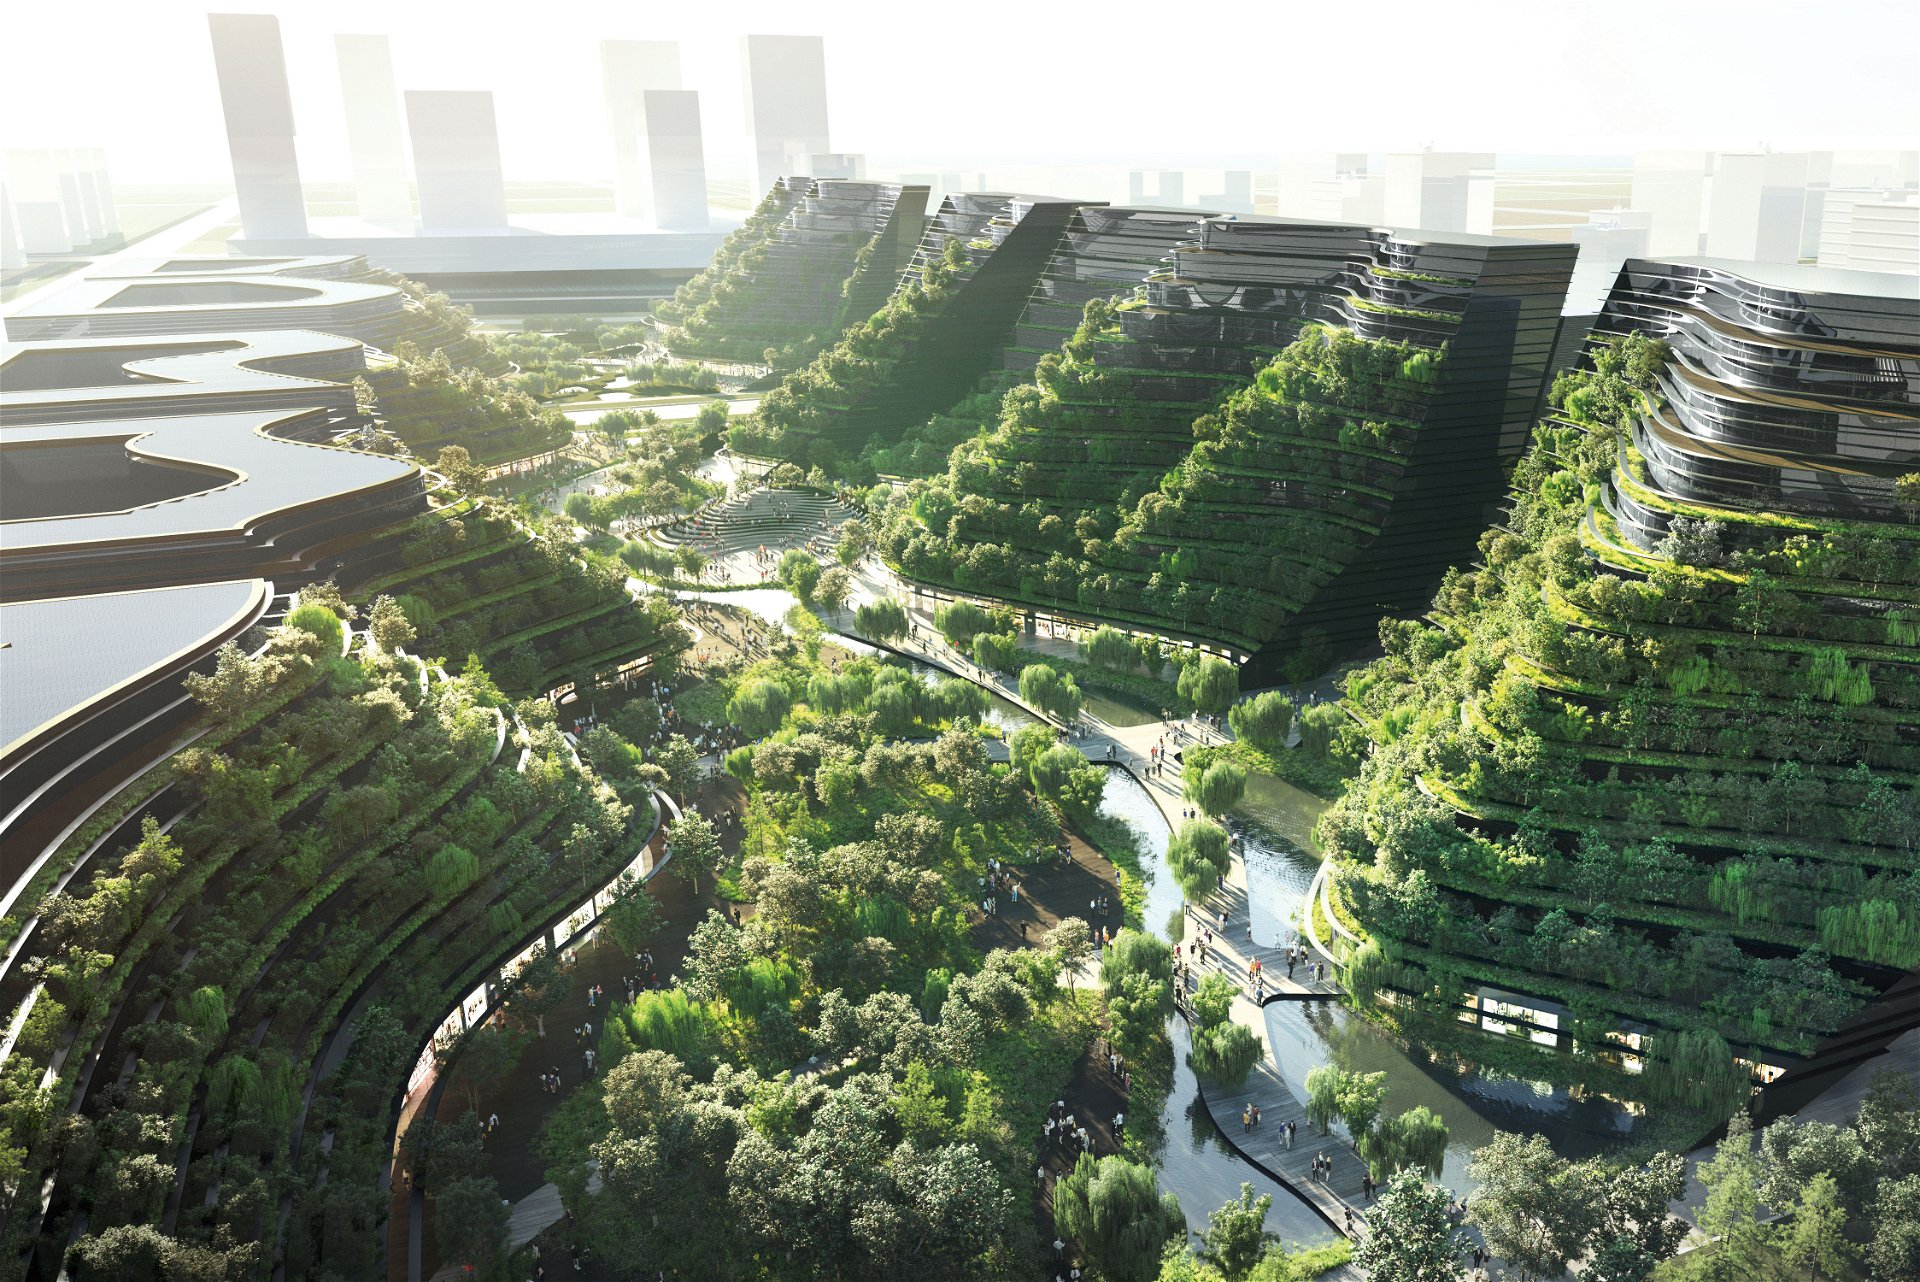 Die Entdeckung grünen Bauens In Fengxian soll eine ökologische und klimaneutrale Freihandelszone entstehen. Das 18 Hektar große Tal mit Wohnungen, Büros und Hotels soll begrünt und mit Wasserflächen bereichert werden. 